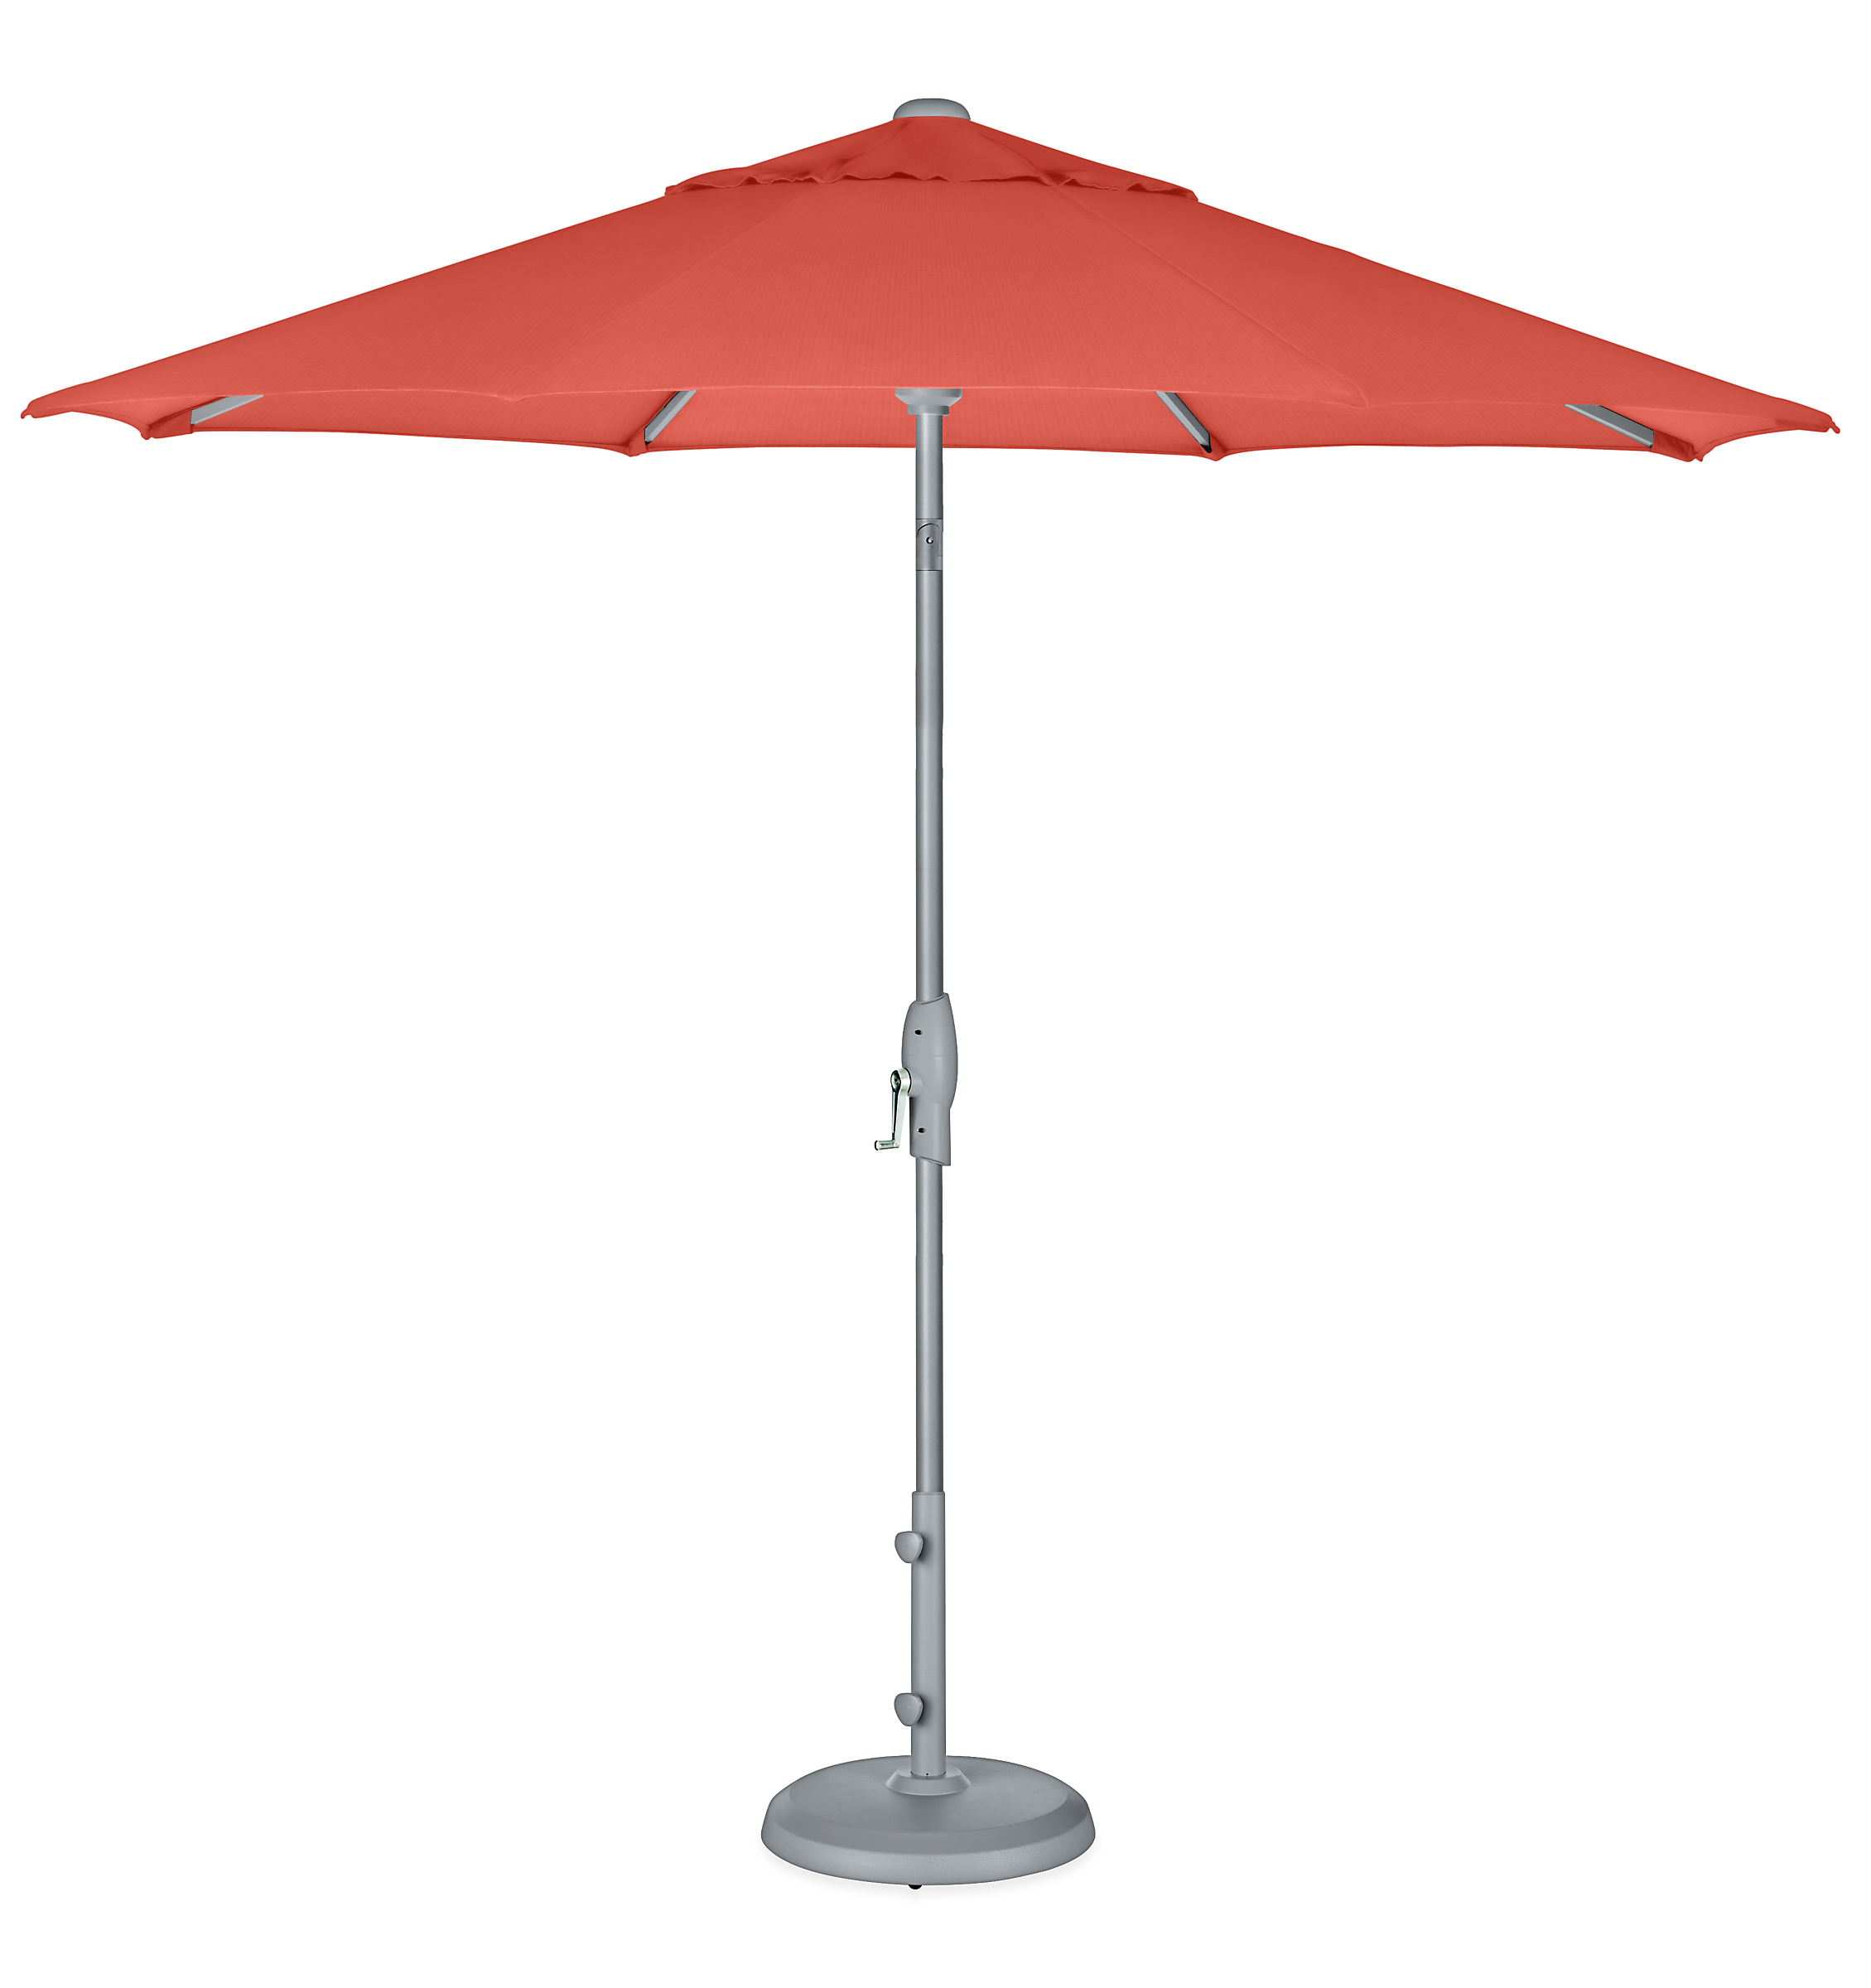 Oahu 9' Round Patio Umbrella in Sunbrella Canvas Orange with Silver Base